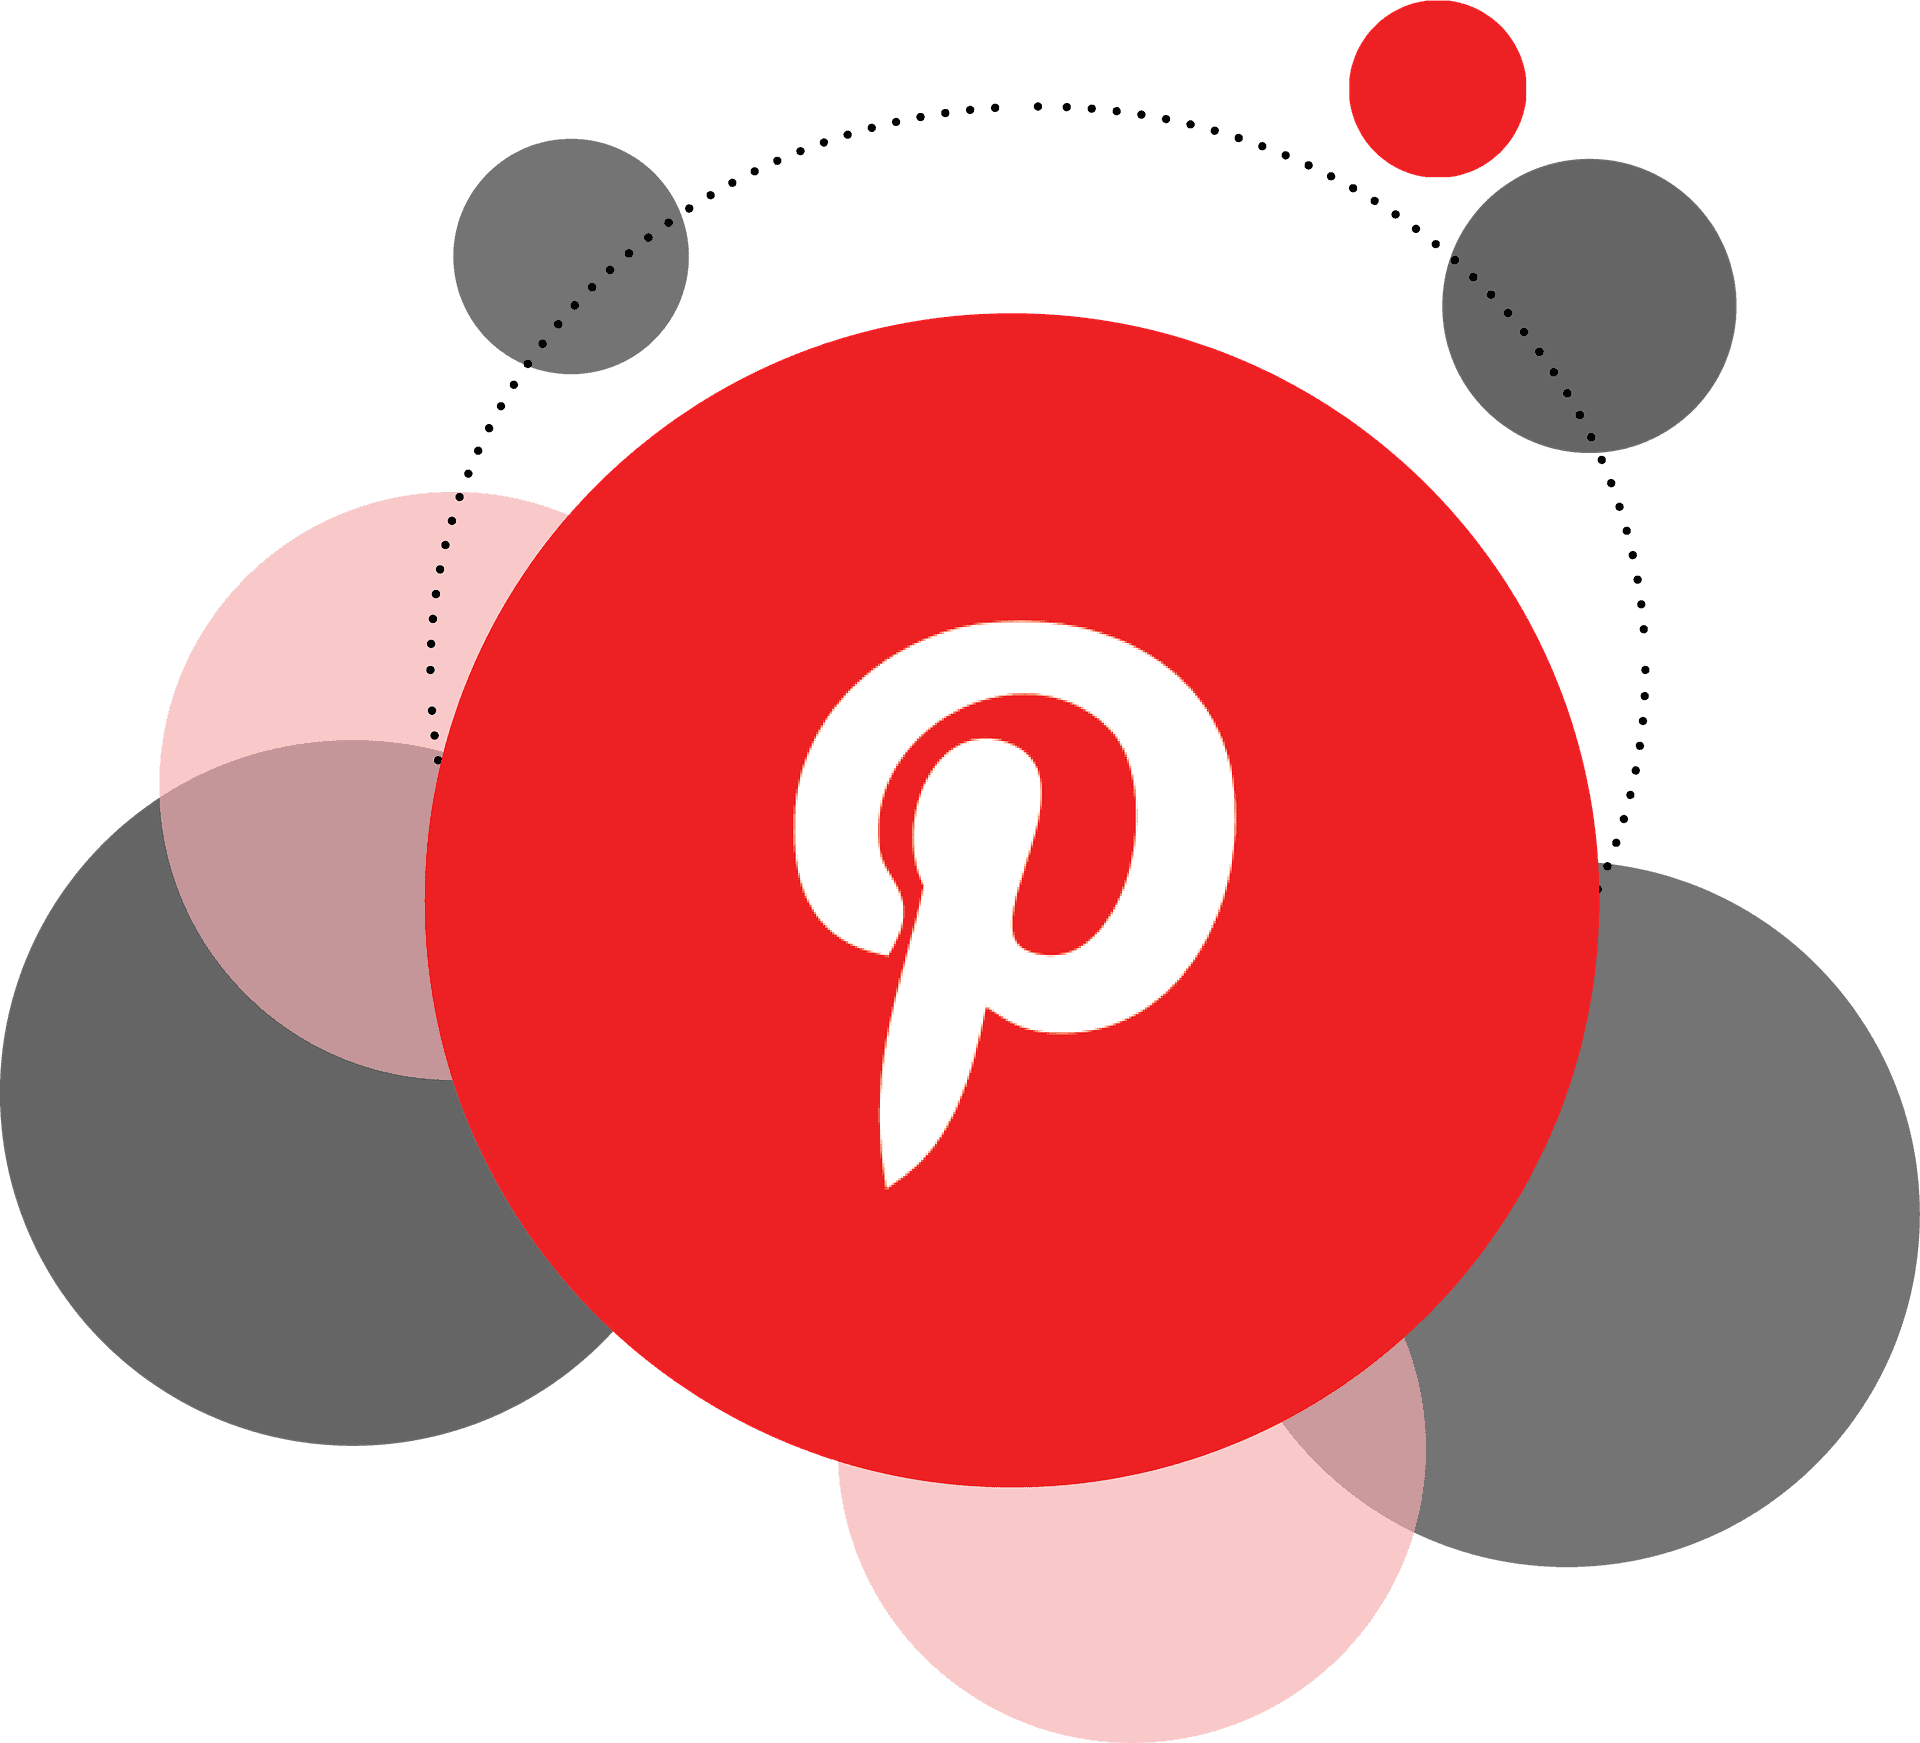 Vamos explorar as oportunidades do Pinterest, uma poderosa ferramenta visual que pode impulsionar o marketing do seu negócio.